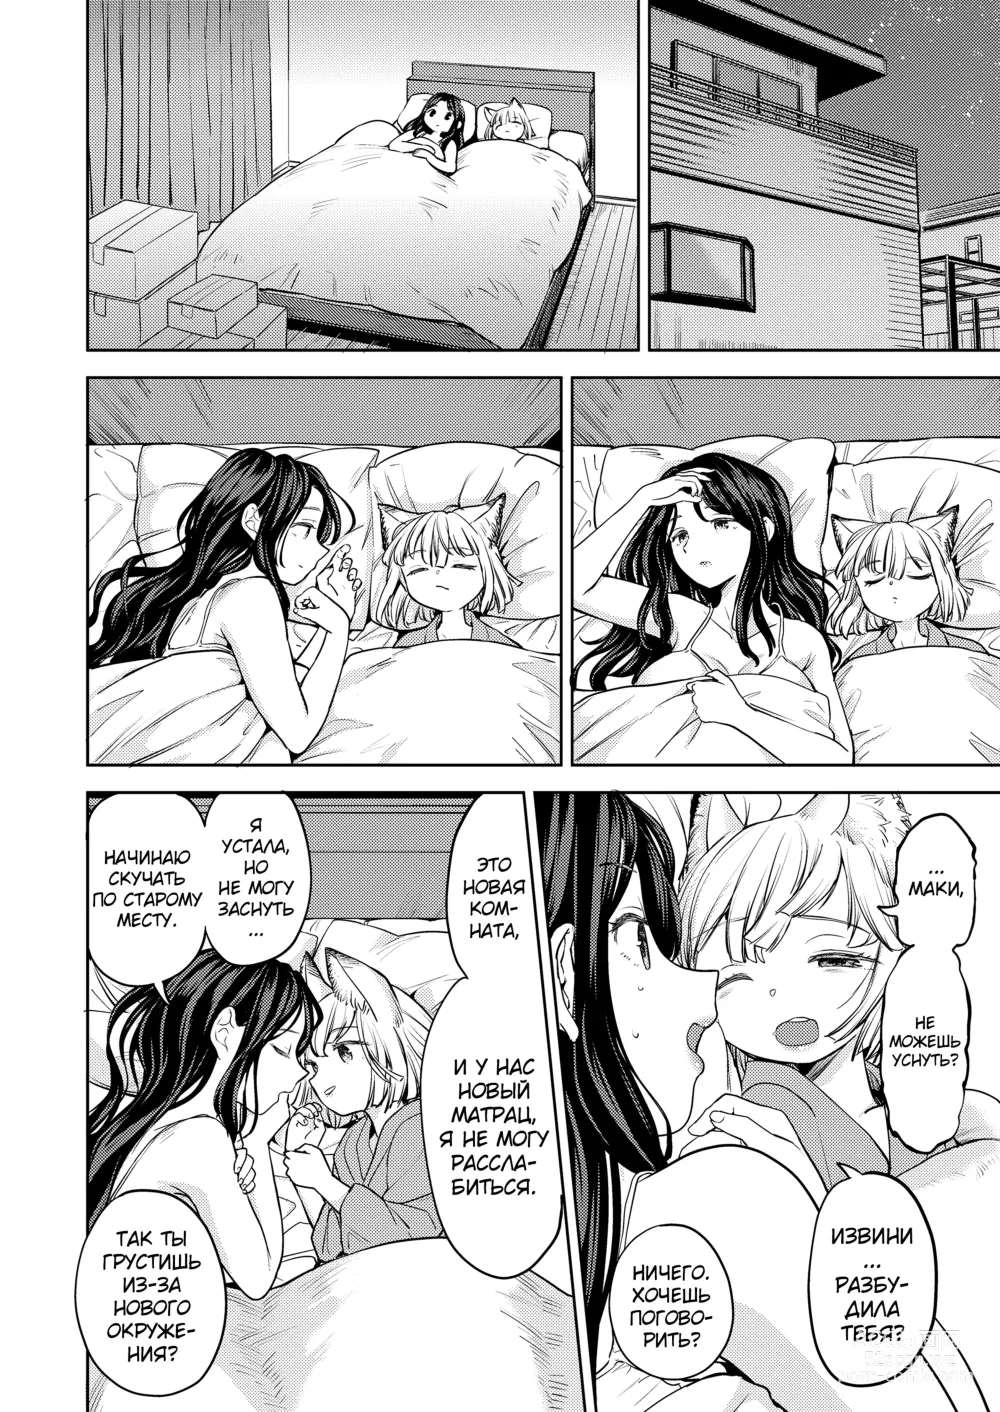 Page 12 of manga Makikomi 6